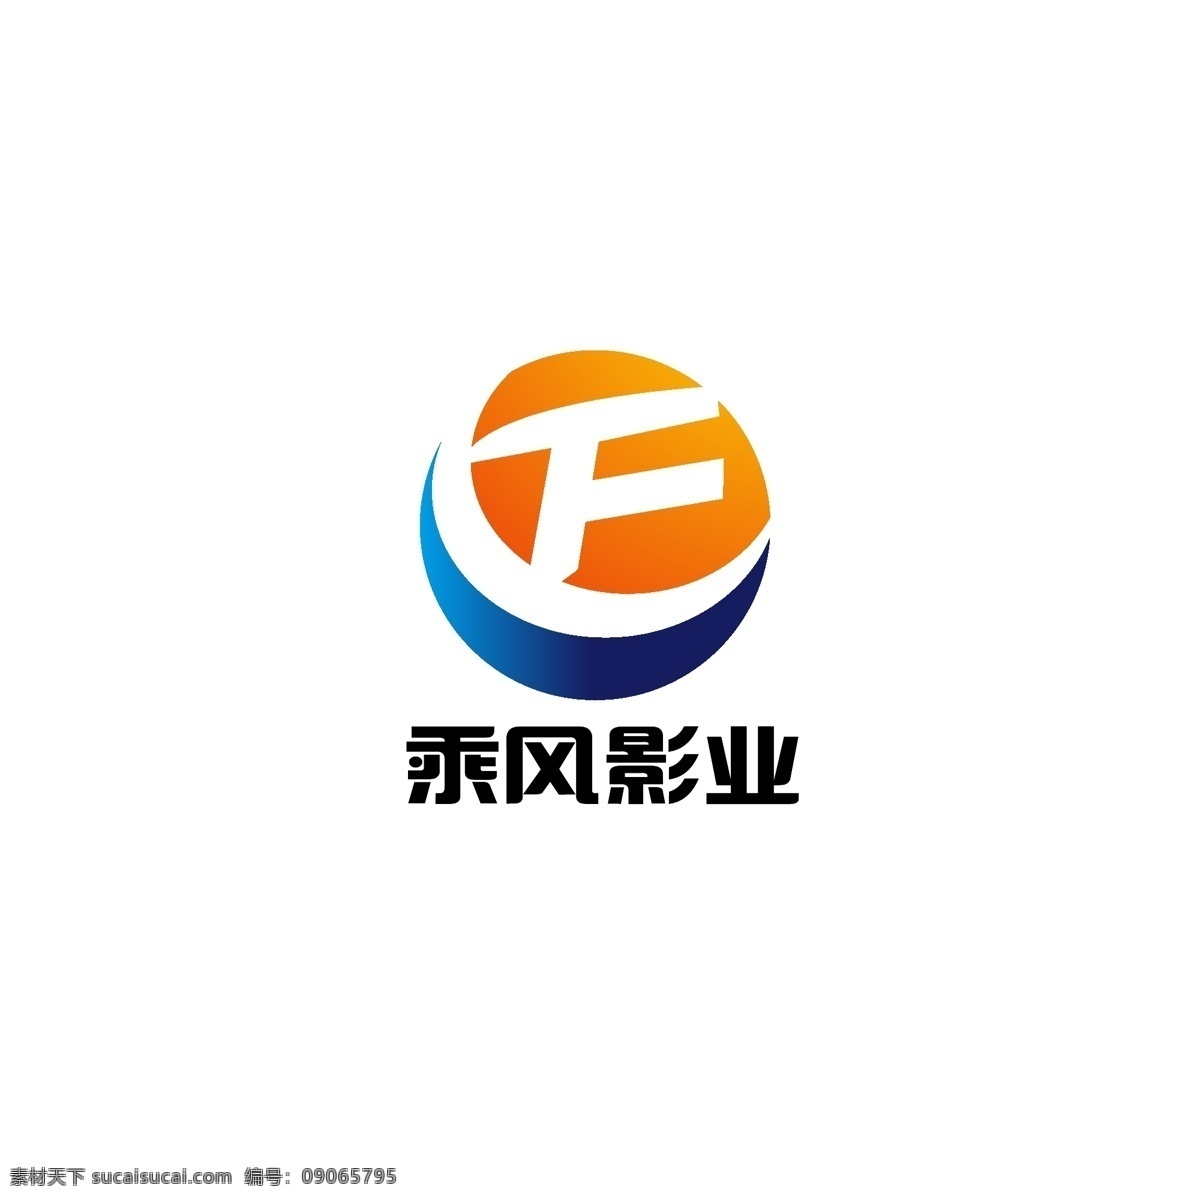 影业 logo 简约 字母f 科技